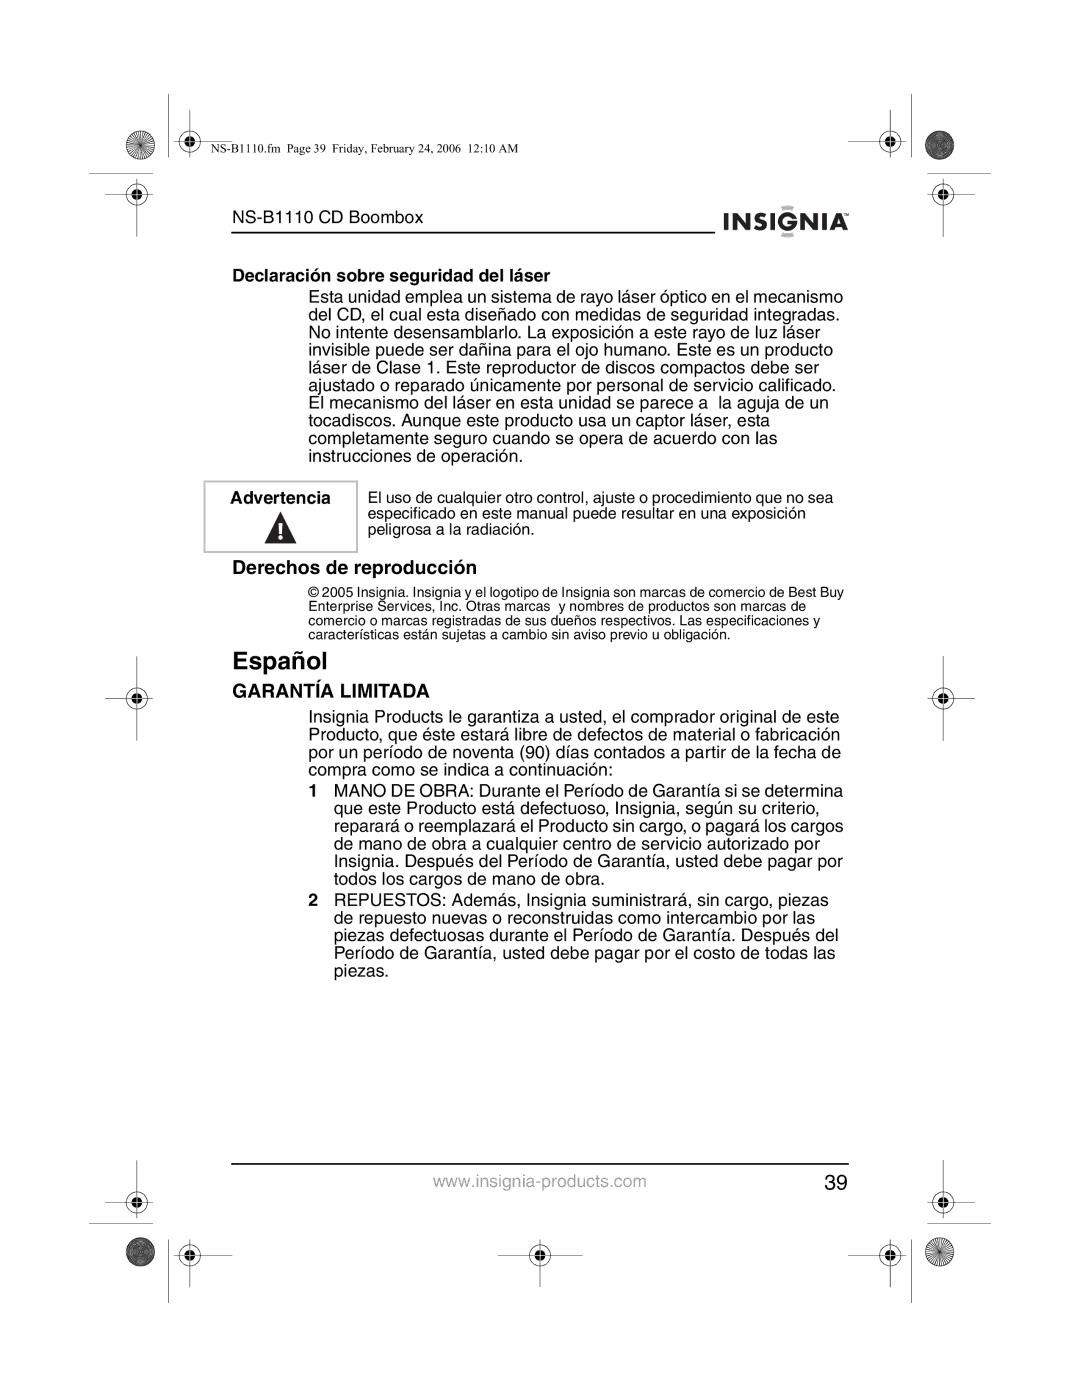 Insignia NS-B1110 manual Español, Derechos de reproducción, Declaración sobre seguridad del láser 